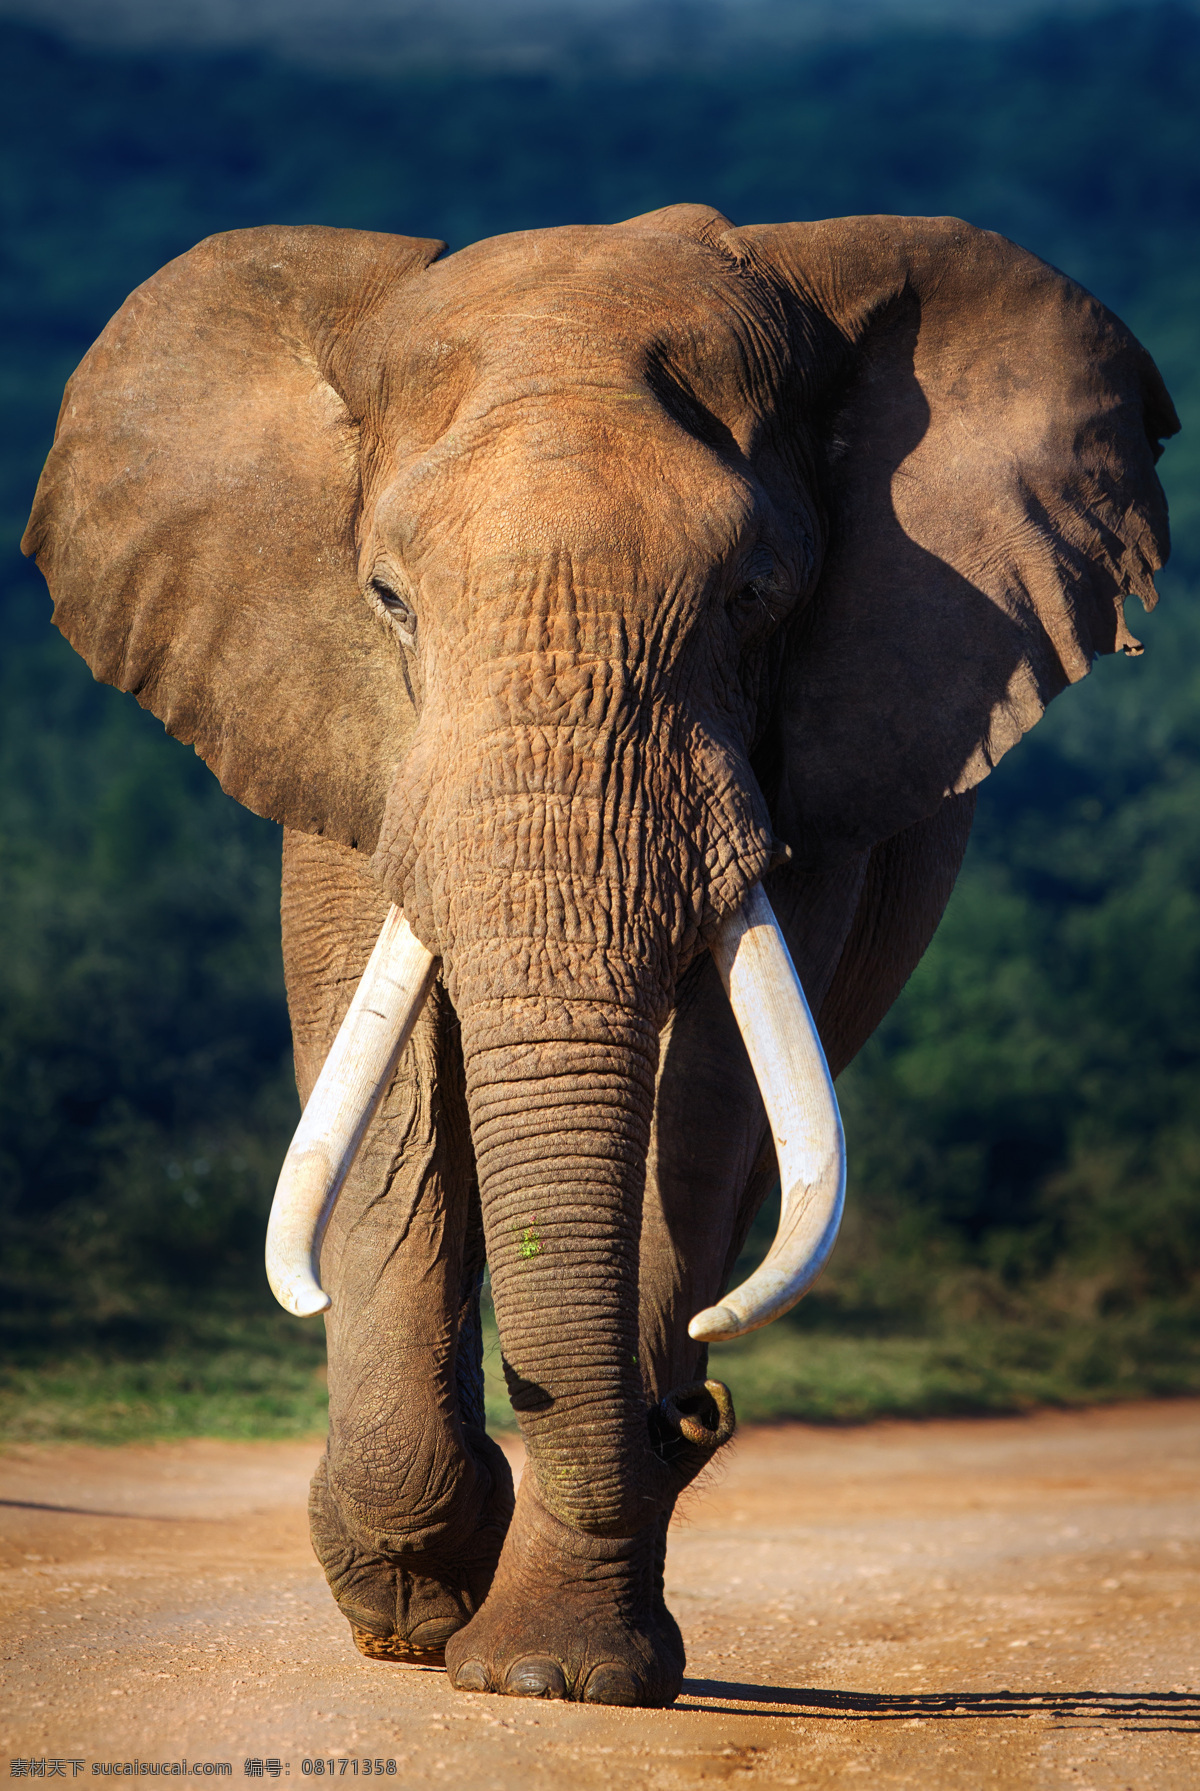 高清大象 高清图 大象 象牙 正面的大象 大象走路 棕色大象 非洲大象 太阳下的大象 黑色